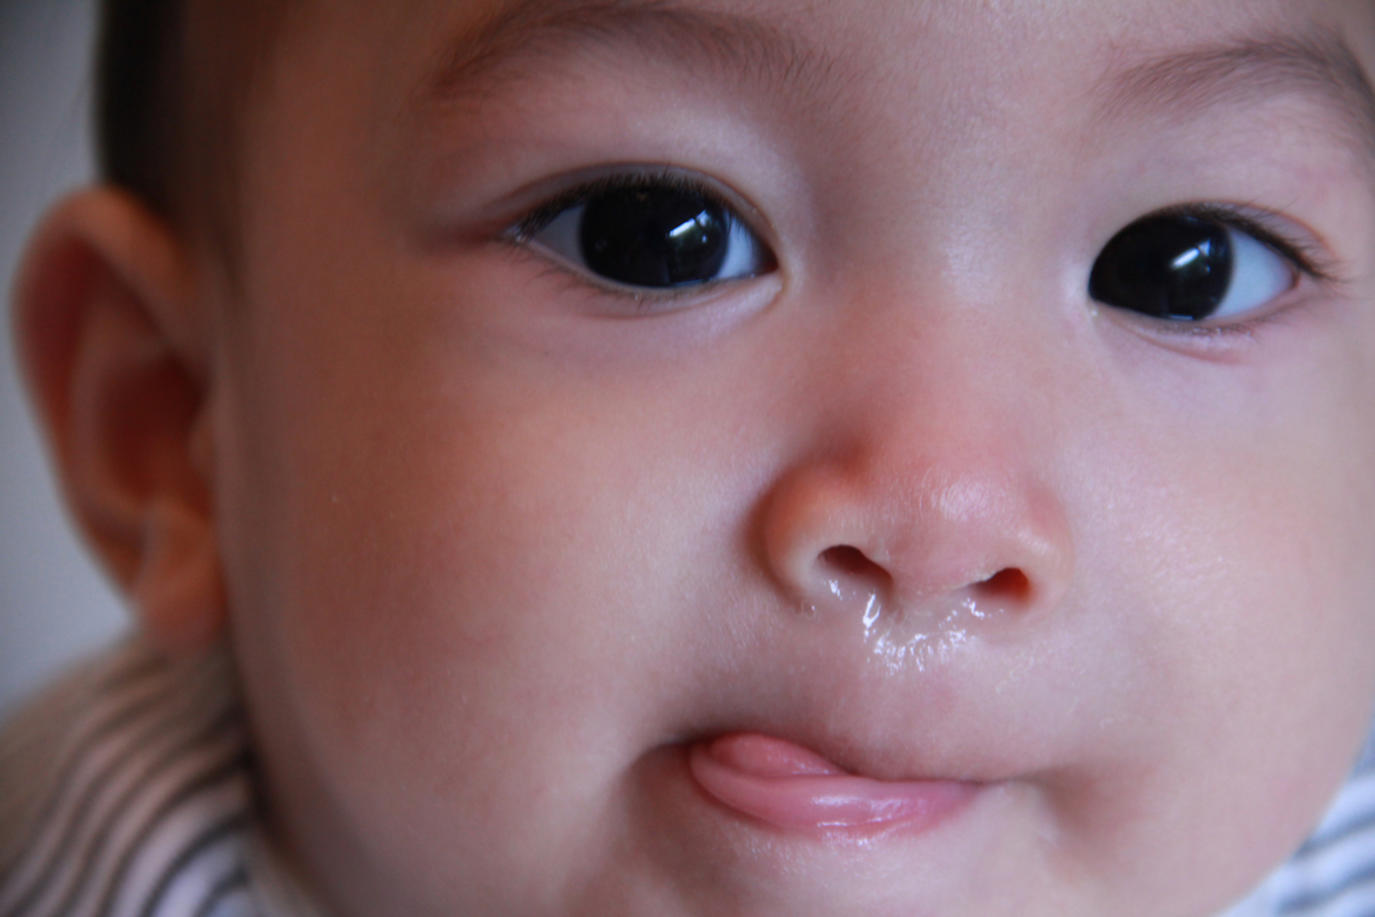 سجل الصور فايال اليسار  علاج البلغم عند الرضيع | مجلة سيدتي